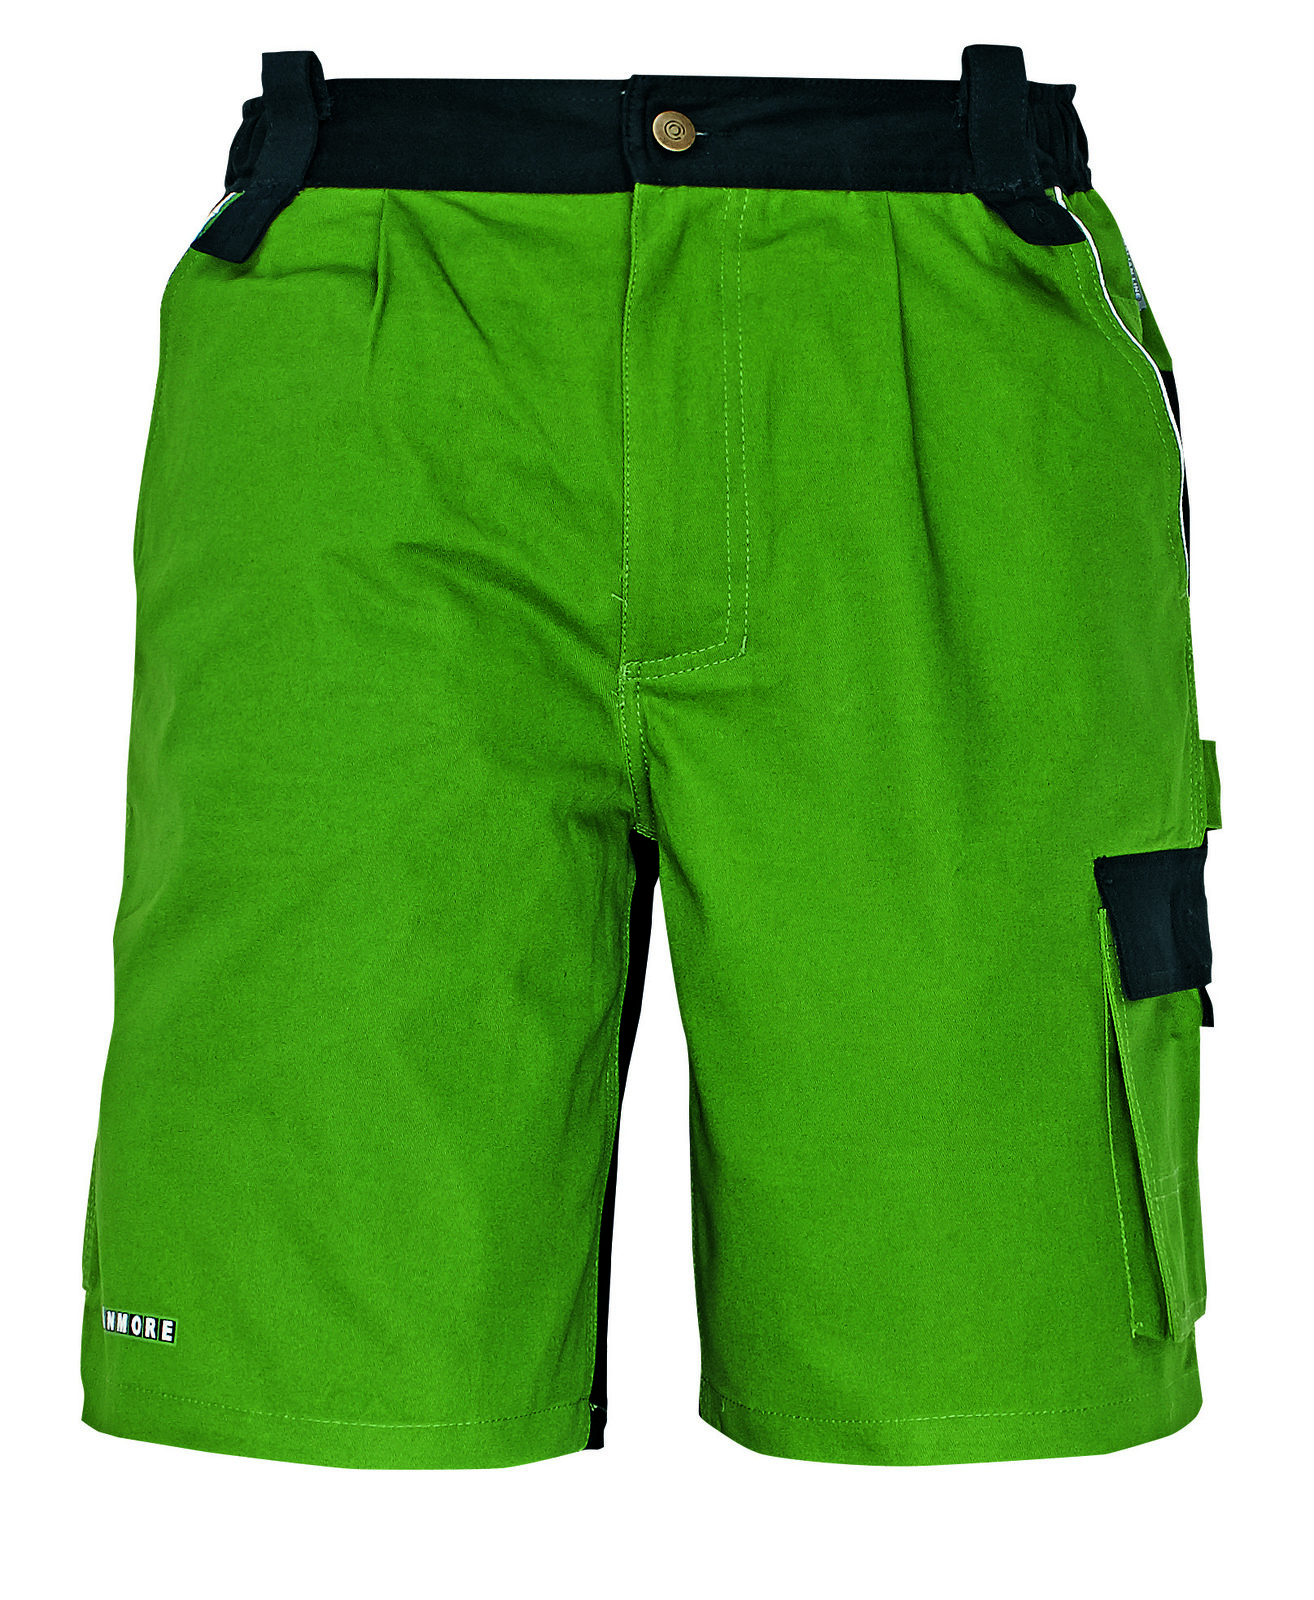 Bavlnené montérkové šortky Stanmore - veľkosť: 62, farba: zelená